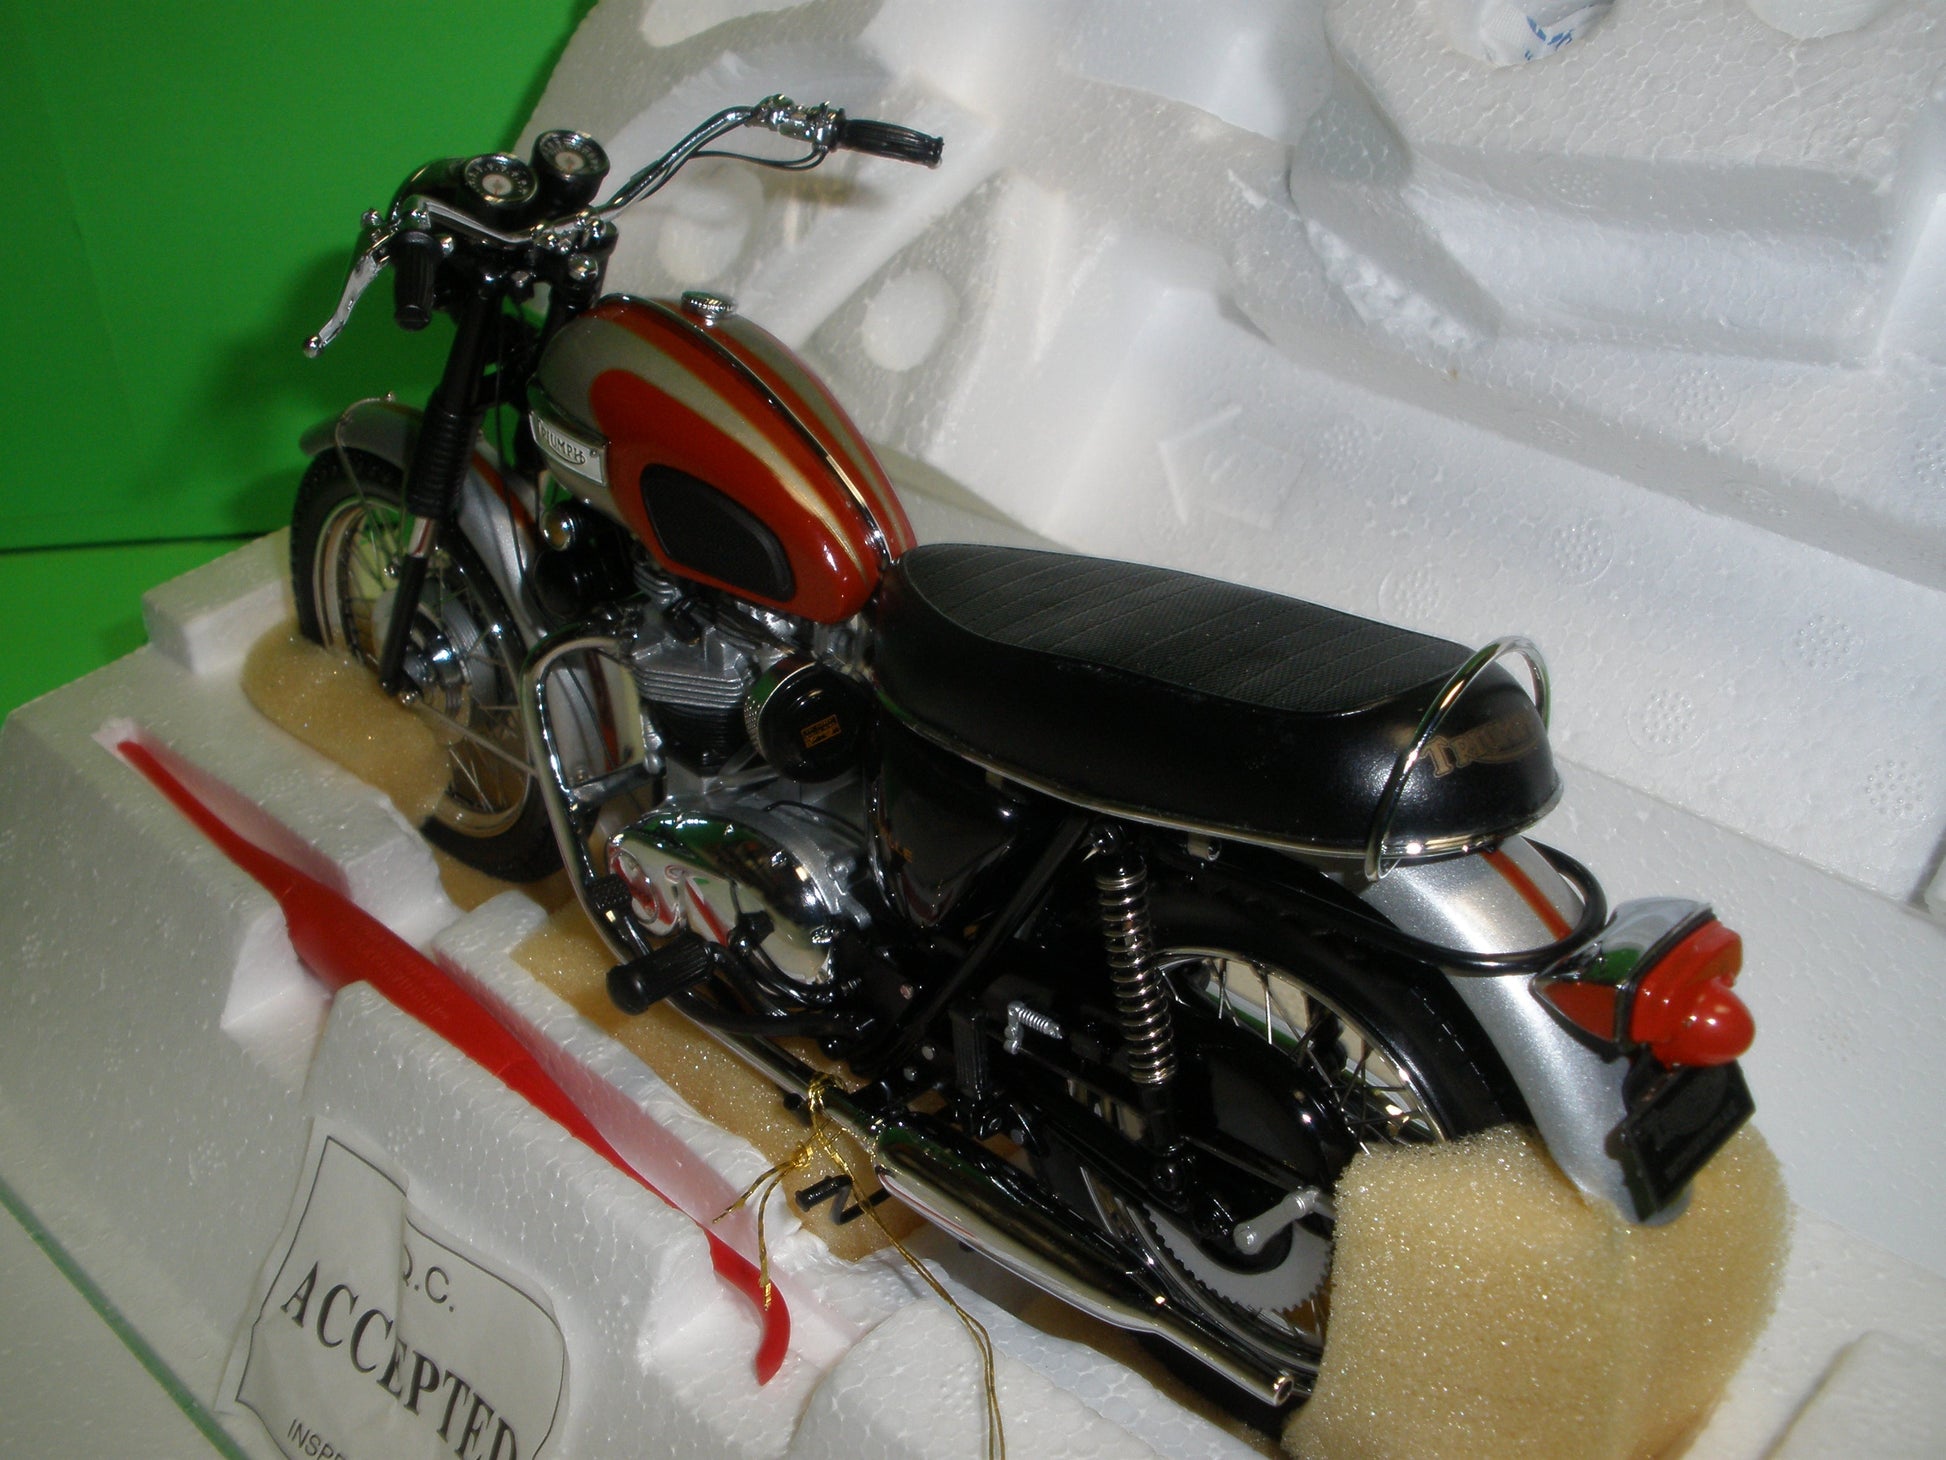 1969 Triumph Bonneville Motorcycle - B11XN71